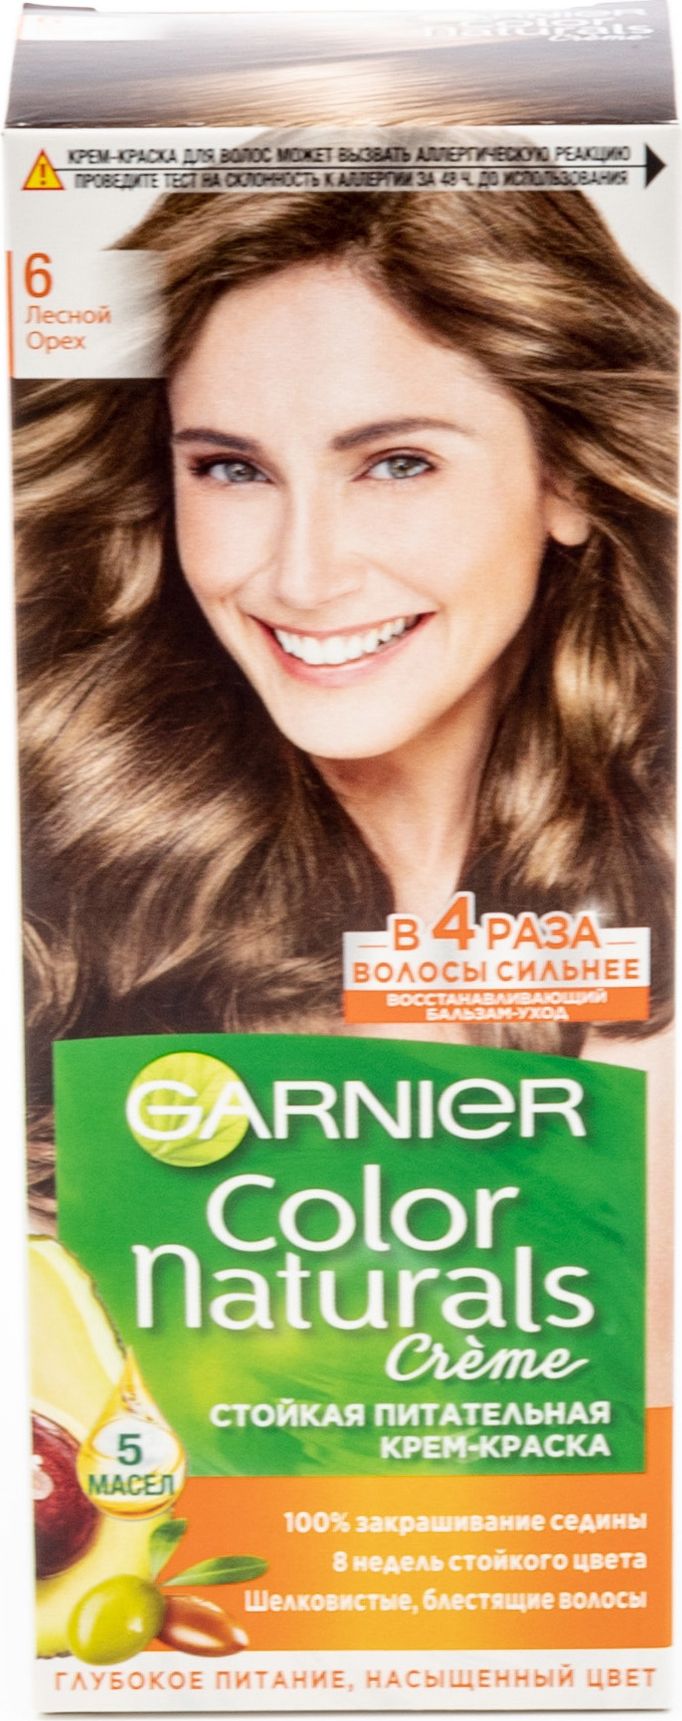 Краска для волос Garnier — палитра и необходимые советы по окрашиванию